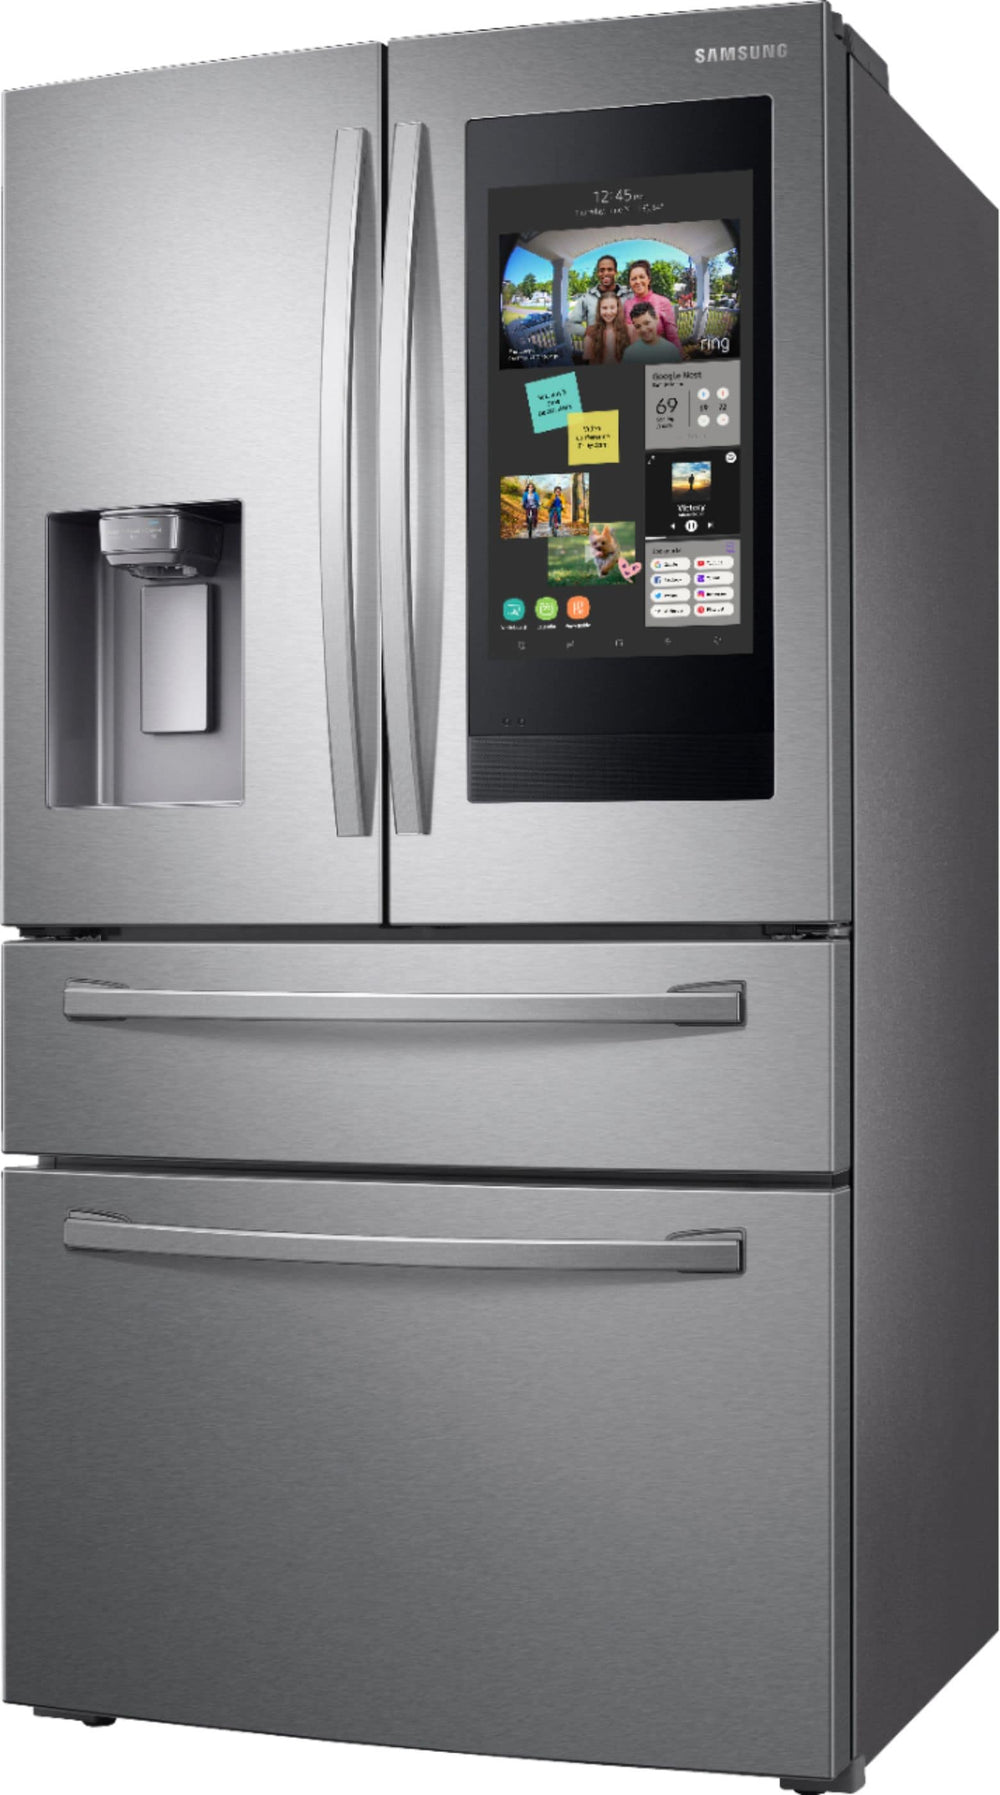 Samsung - Family Hub 27.7 Cu. Ft. 4-Door French Door  Fingerprint Resistant Refrigerator - Stainless steel_1